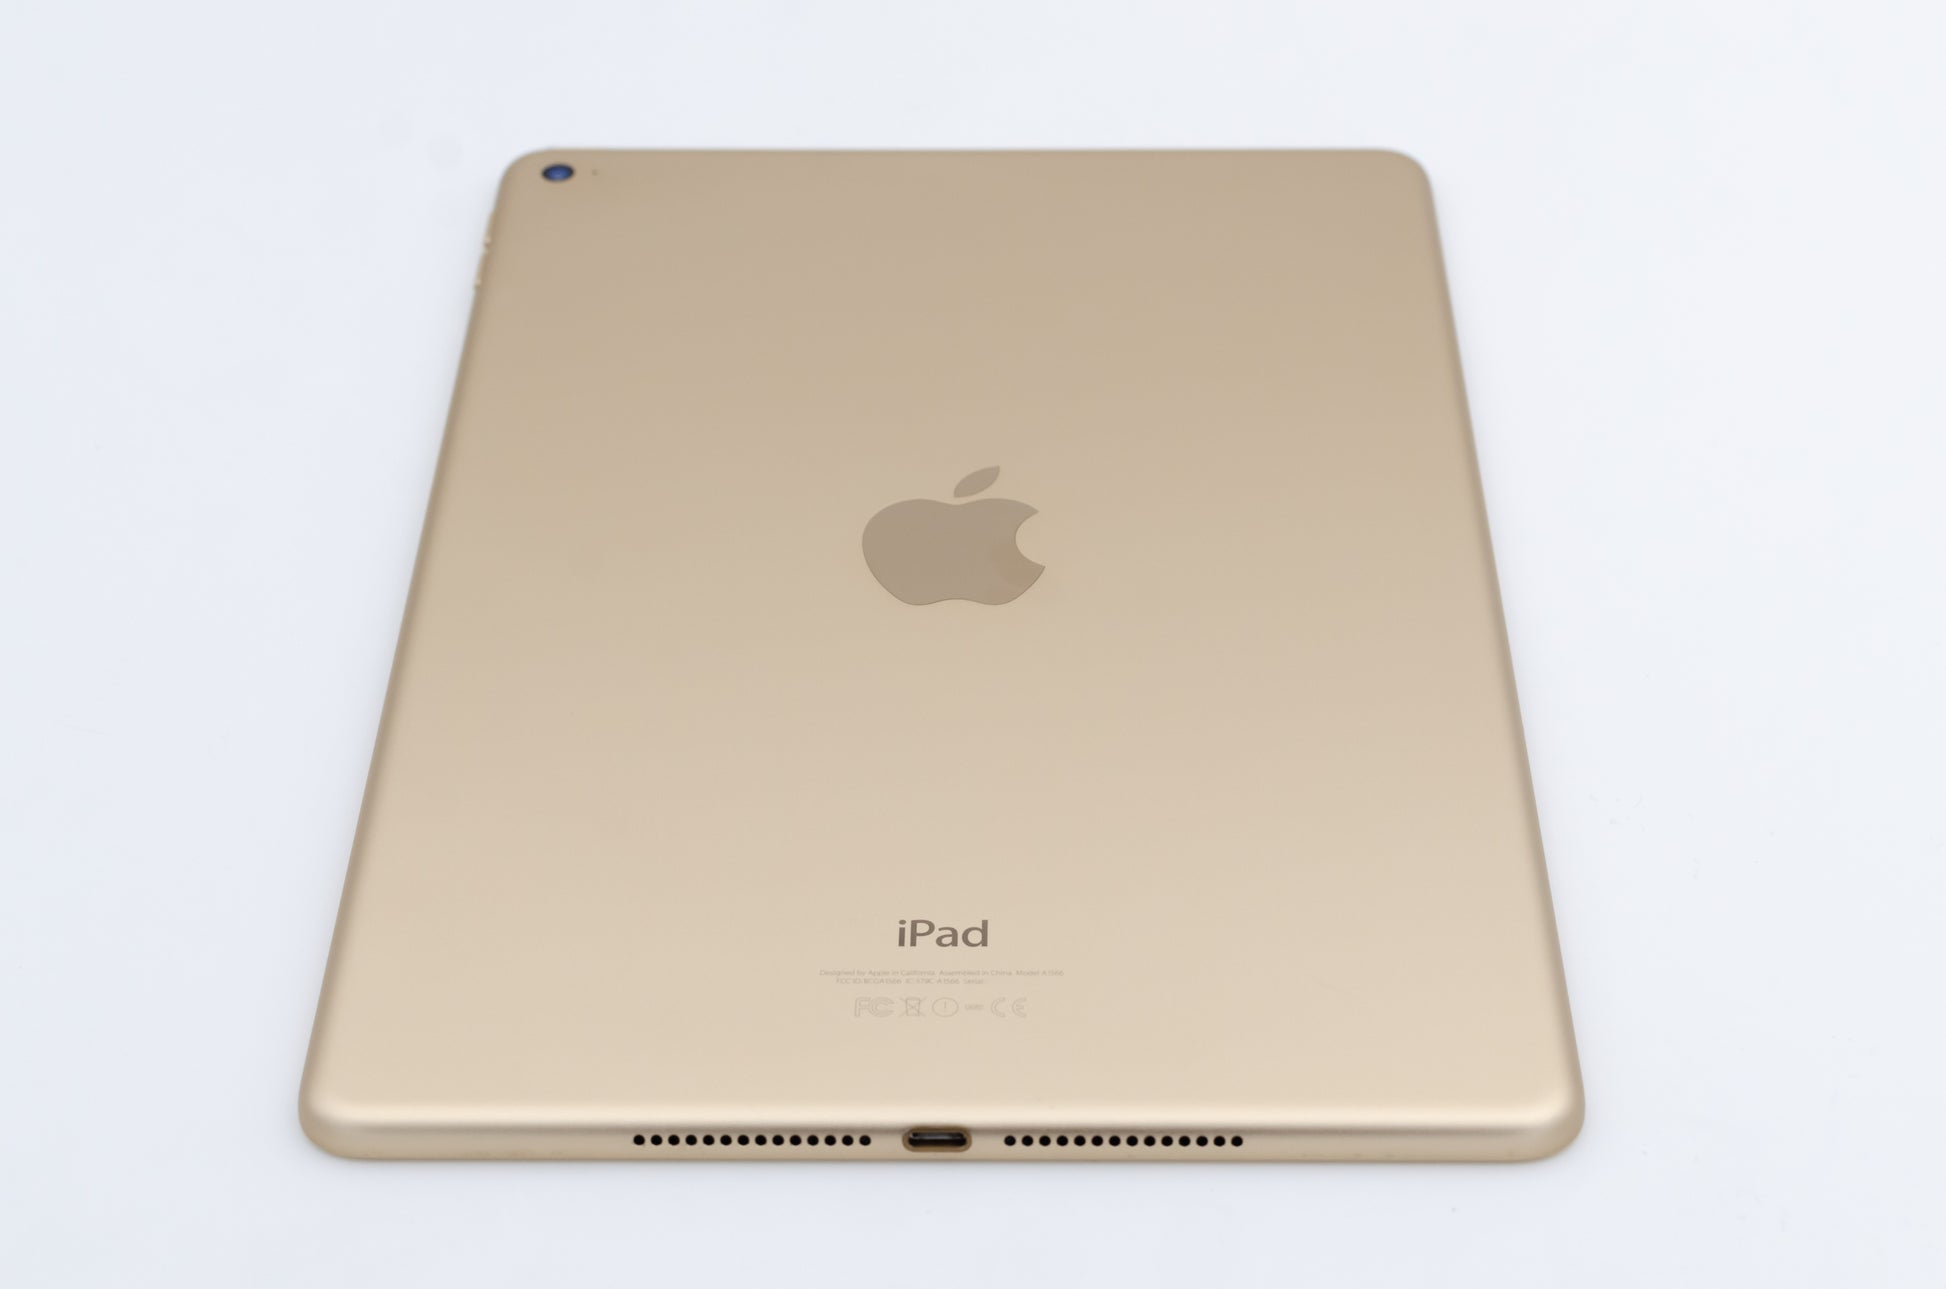 apple-2014-9.7-inch-ipad-air-2-a1566-gold/white-5